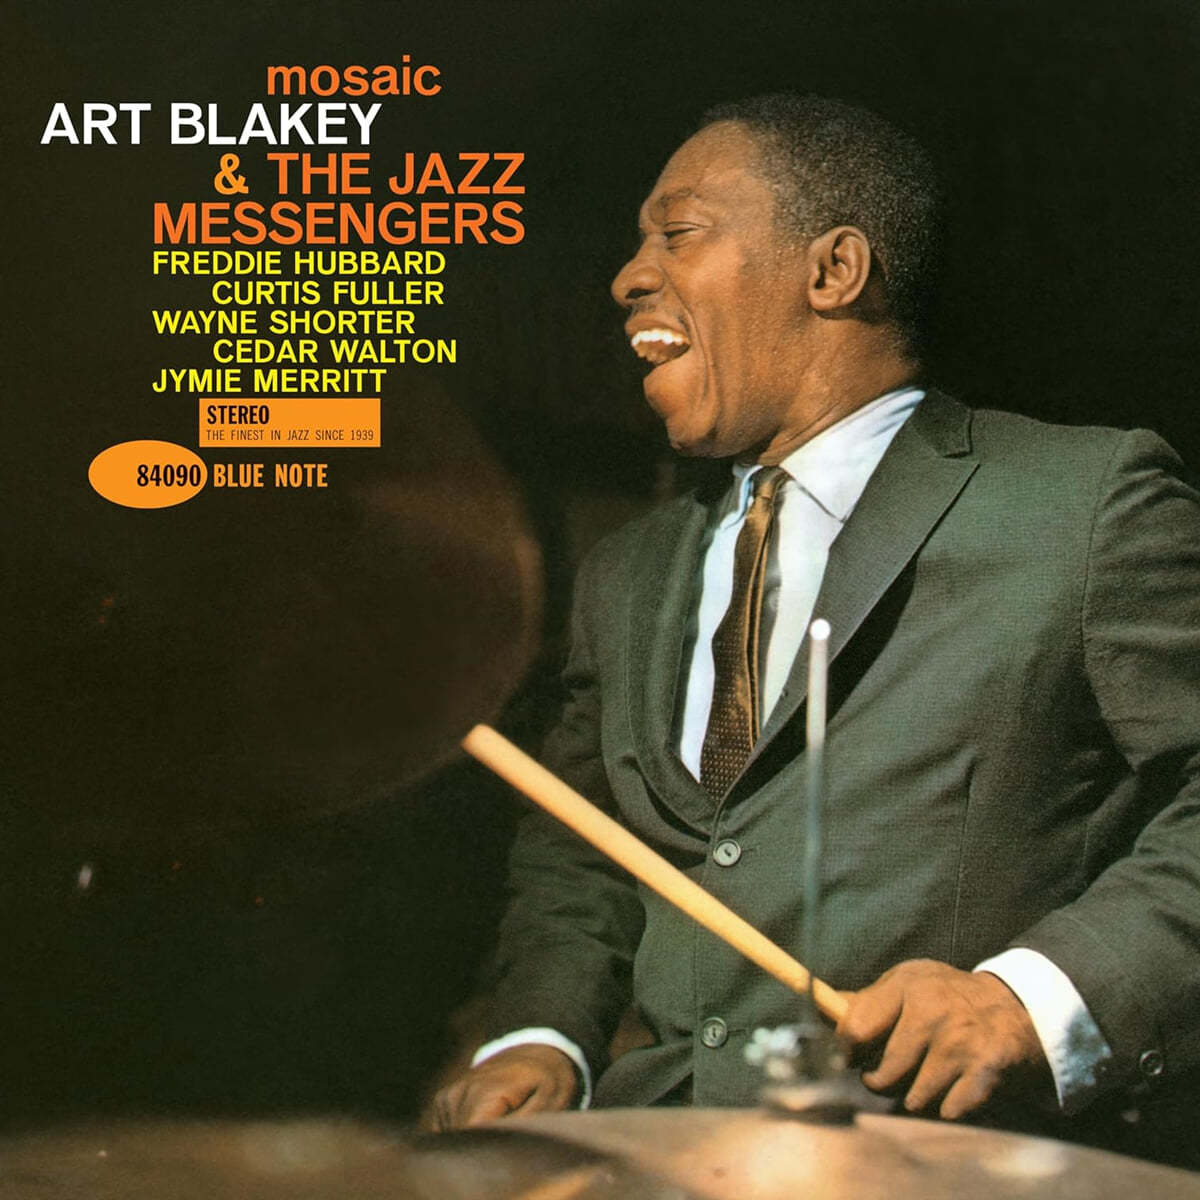 Art Blakey & The Jazz Messengers (아트 블레키 & 재즈 메신저스) - Mosaic [LP]